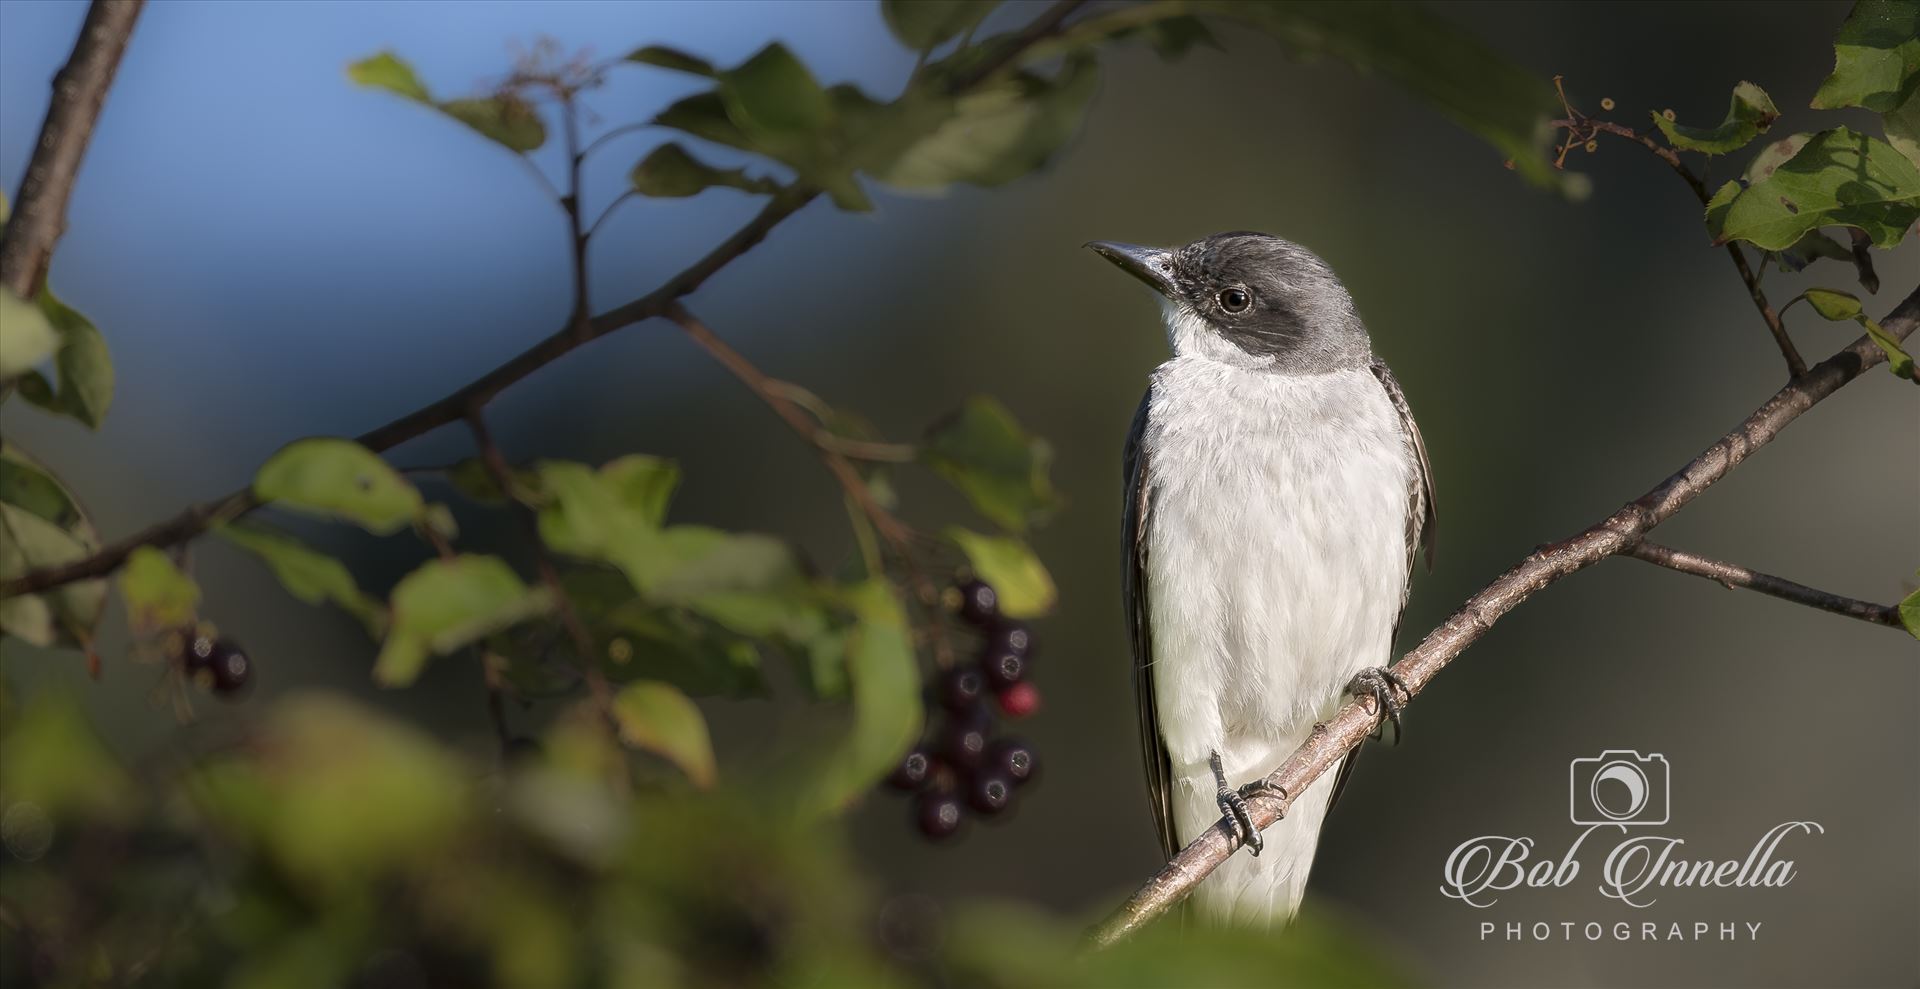 Kingbird in Berries-1-1.JPG  by Buckmaster